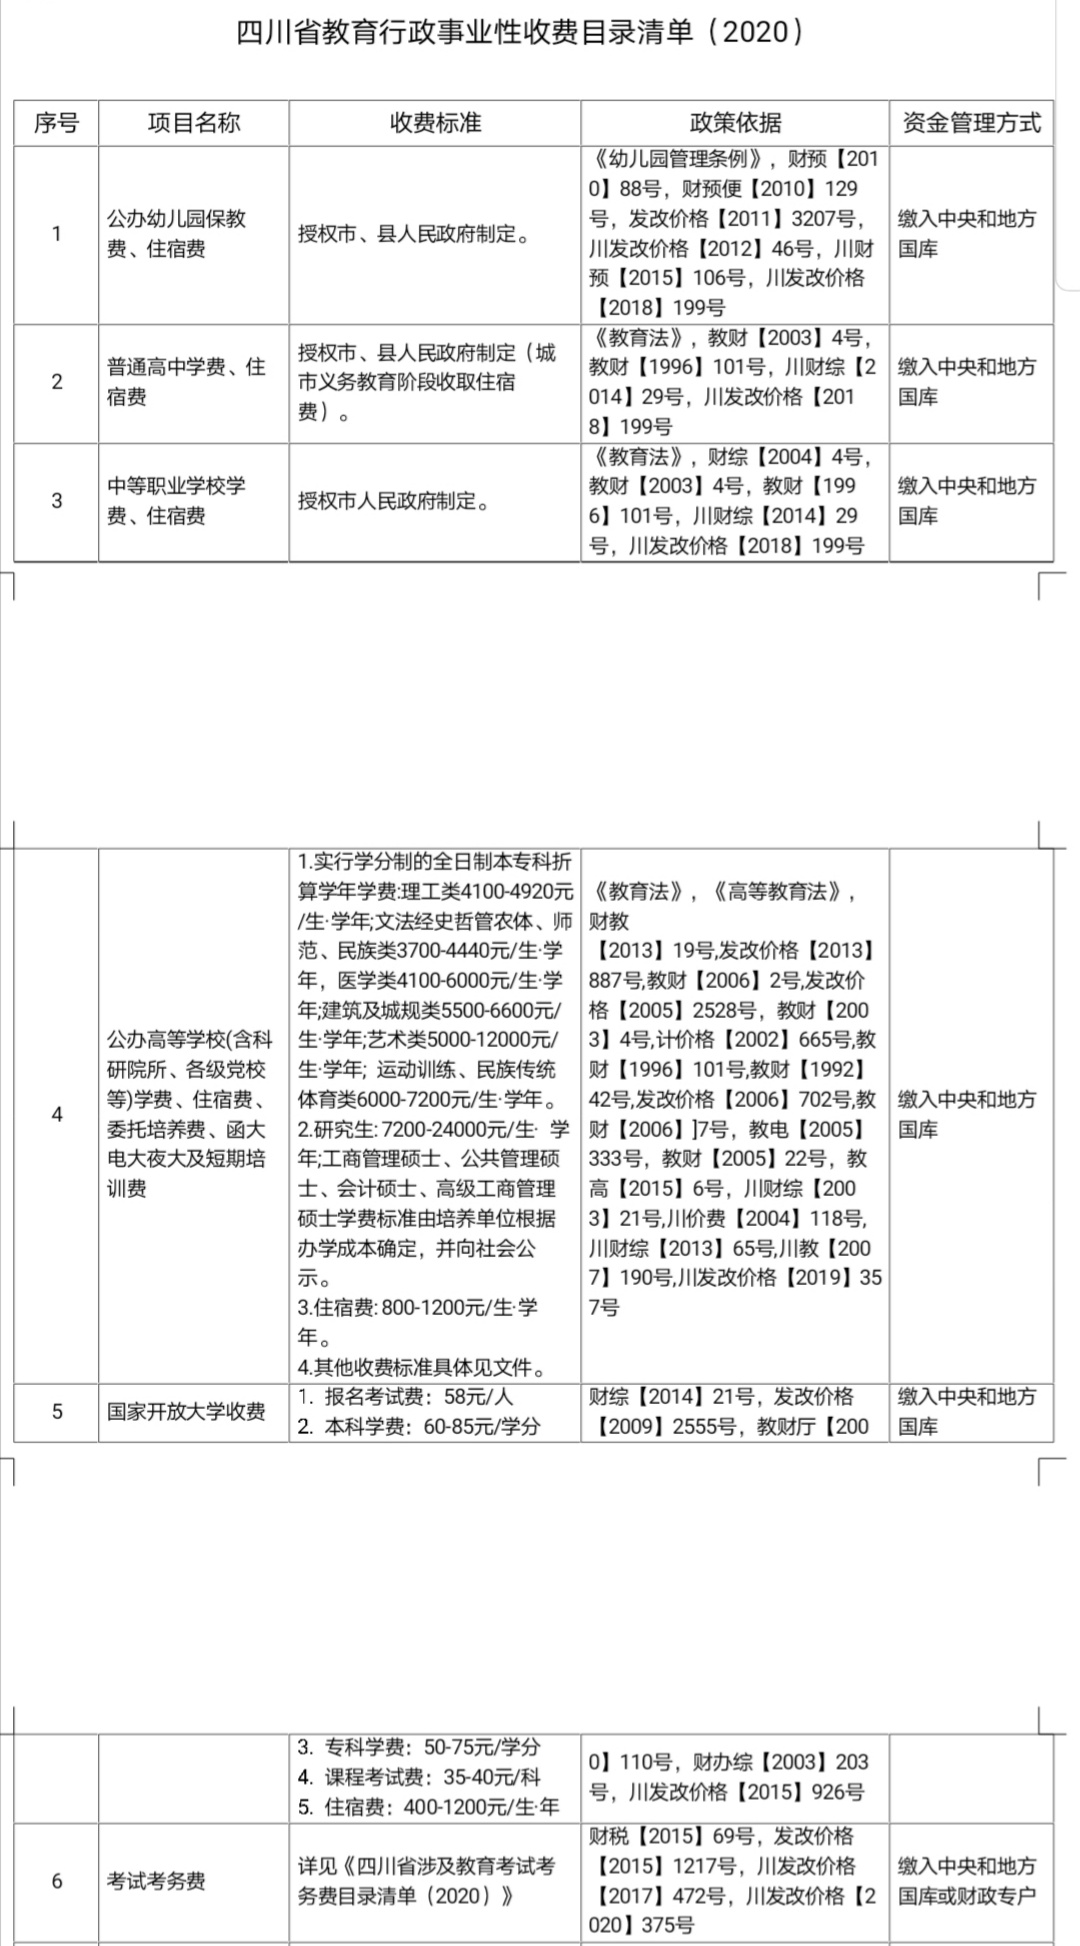 四川省教育行政事业性收费目录清单公布